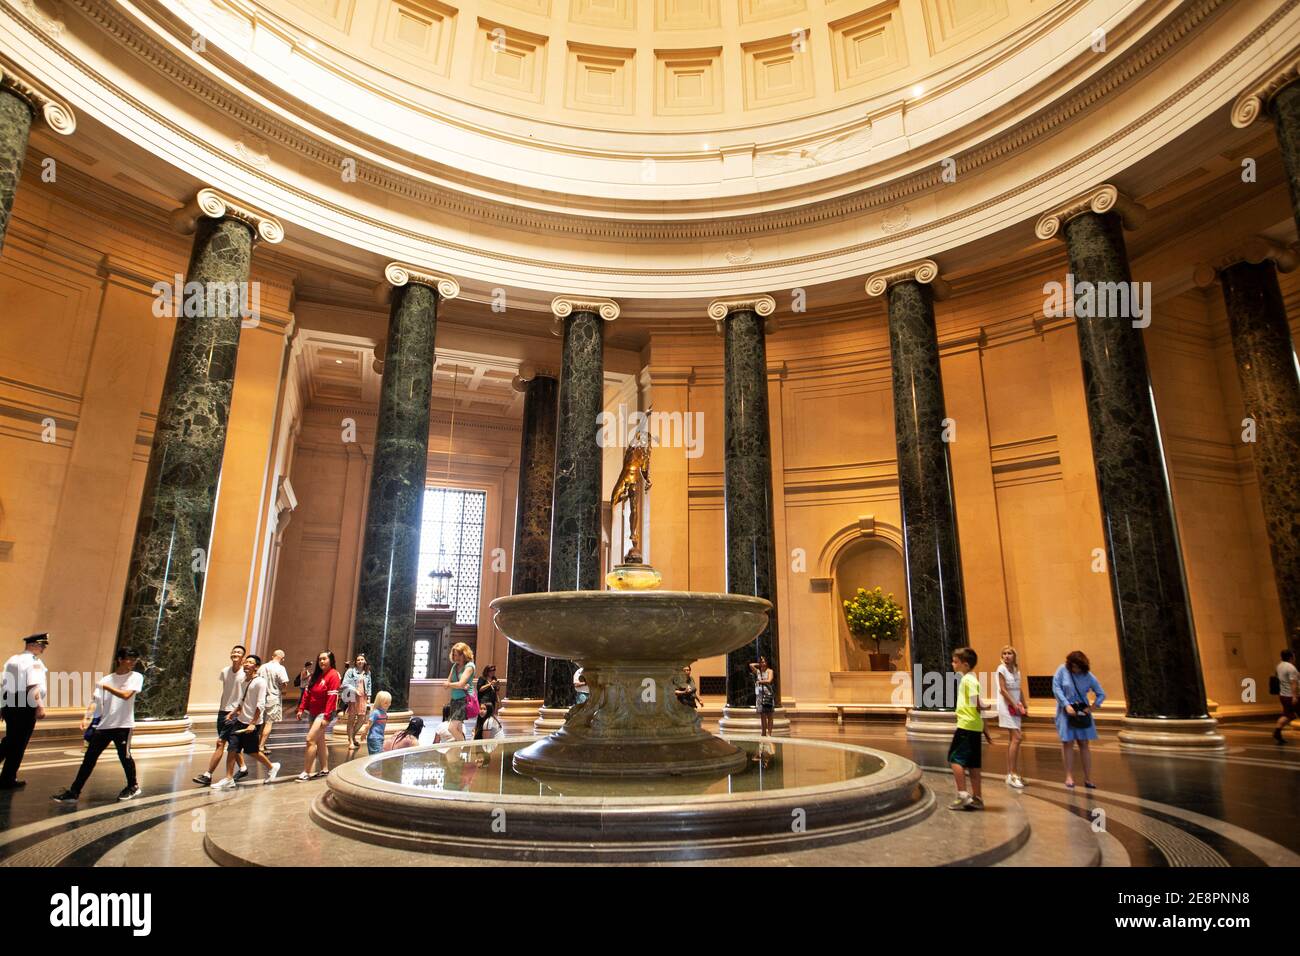 Der Merkurbrunnen in der Rotunde des West Building der National Gallery of Art in Washington, DC, USA. Stockfoto